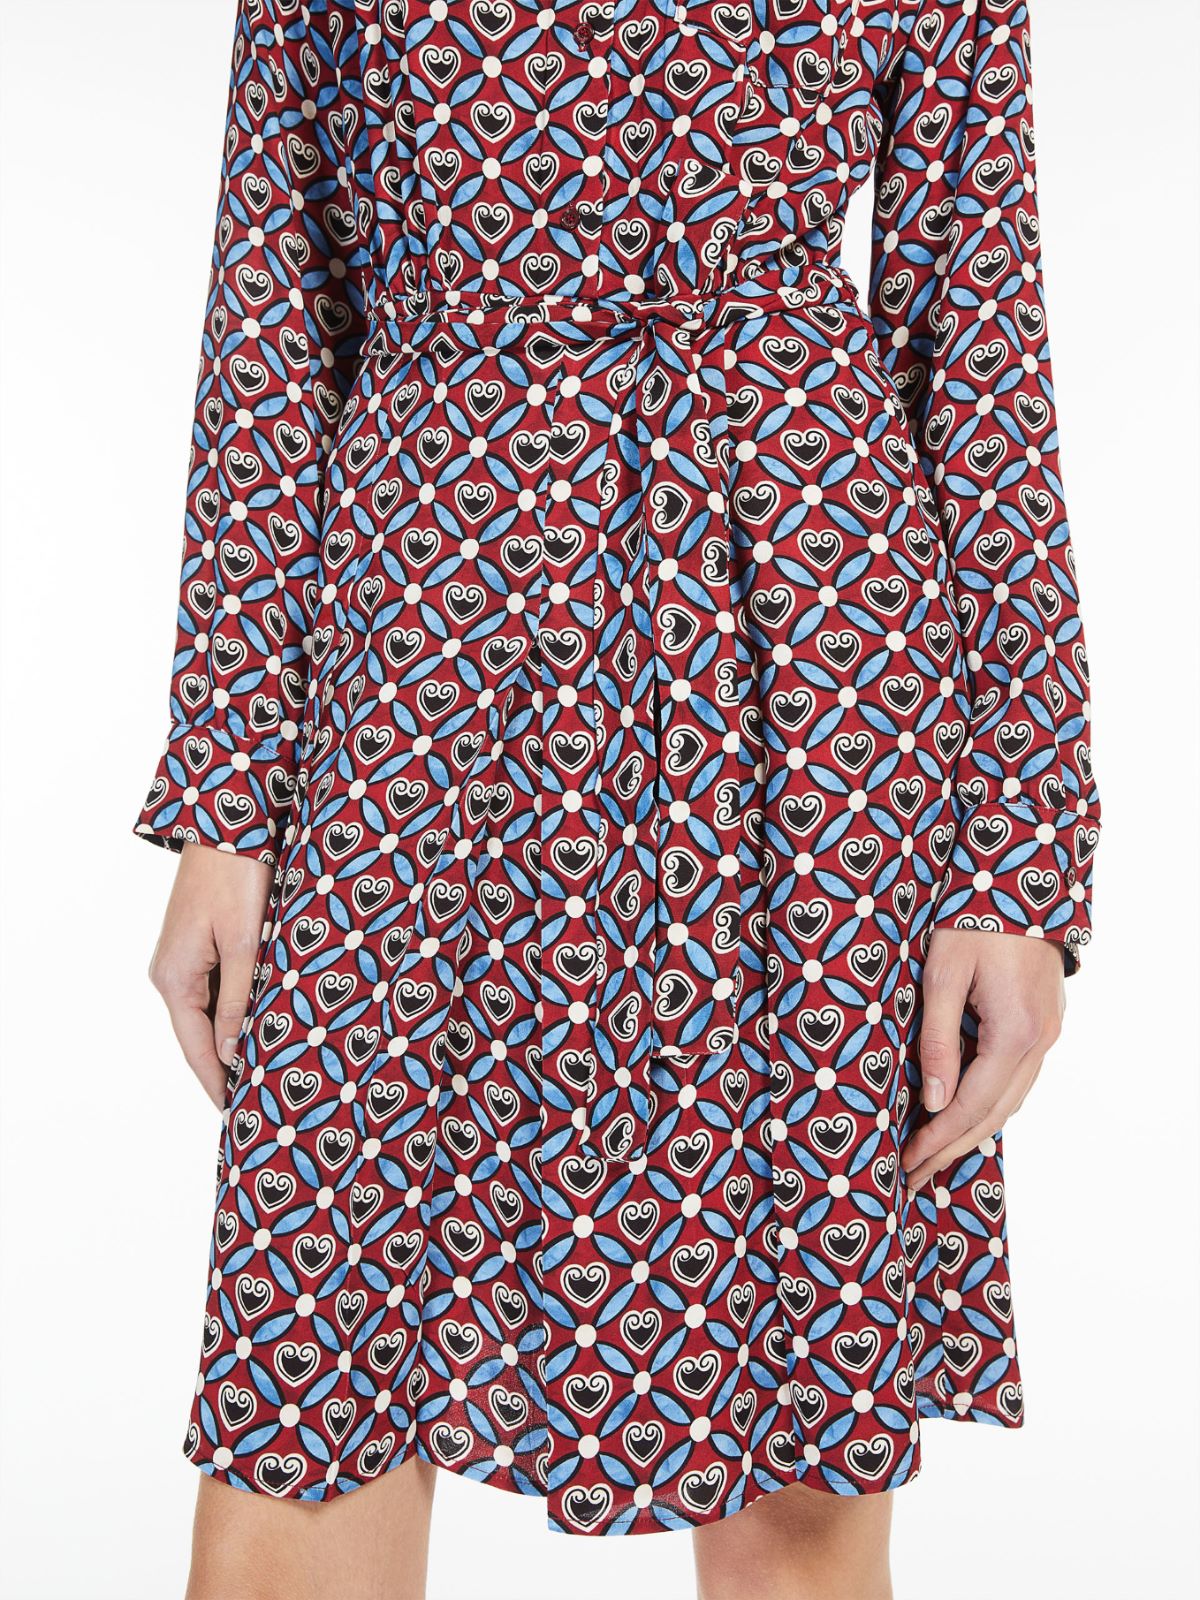 Printed georgette dress - ANTIQUE ROSE - Weekend Max Mara - 5